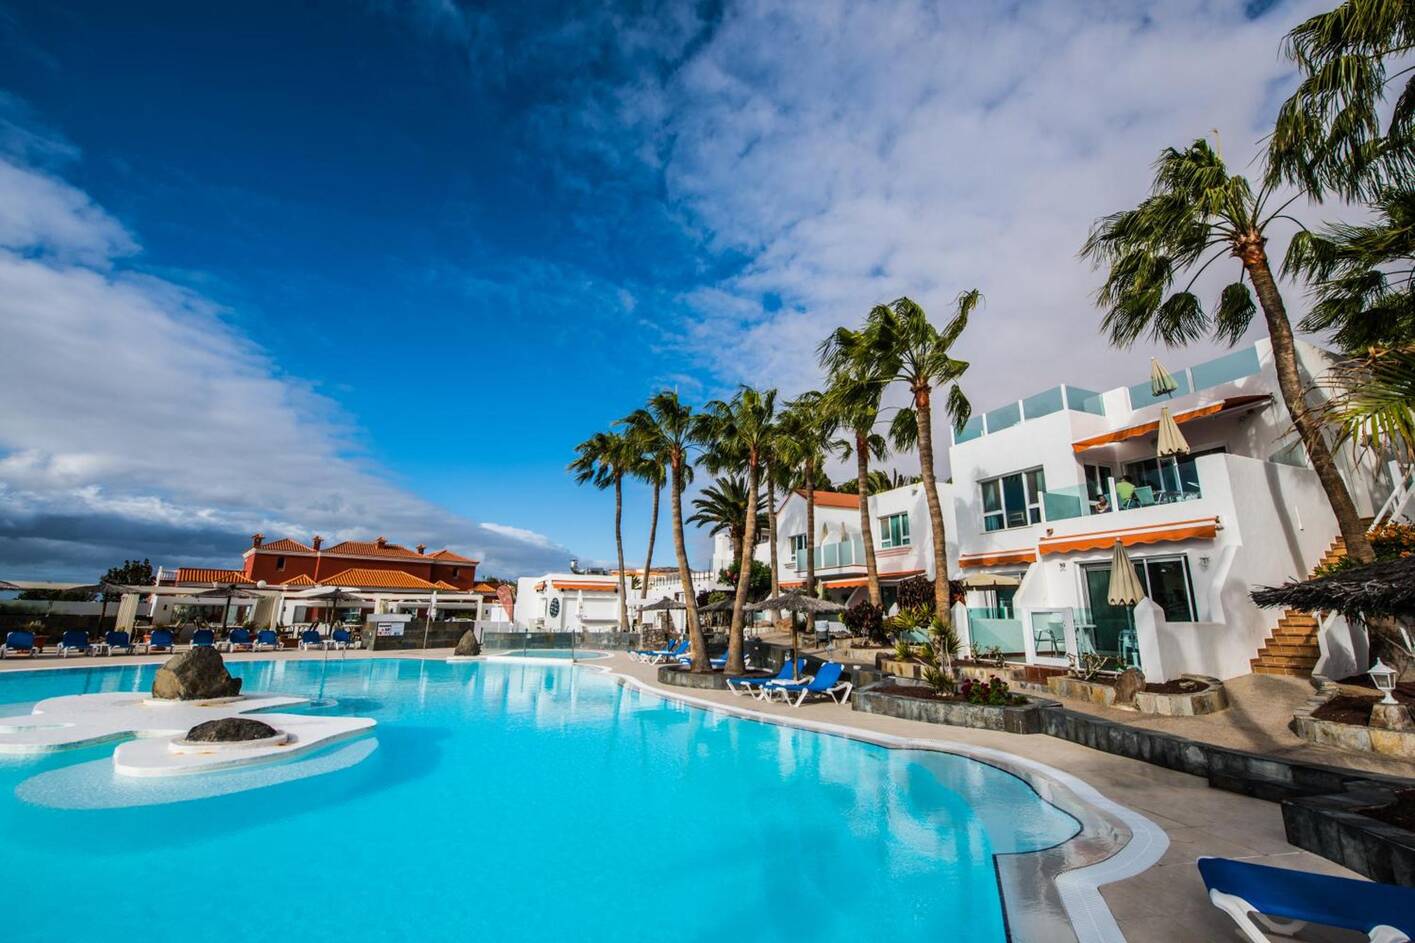 Bahía Costa Calma, cheap hotels on fuerteventura